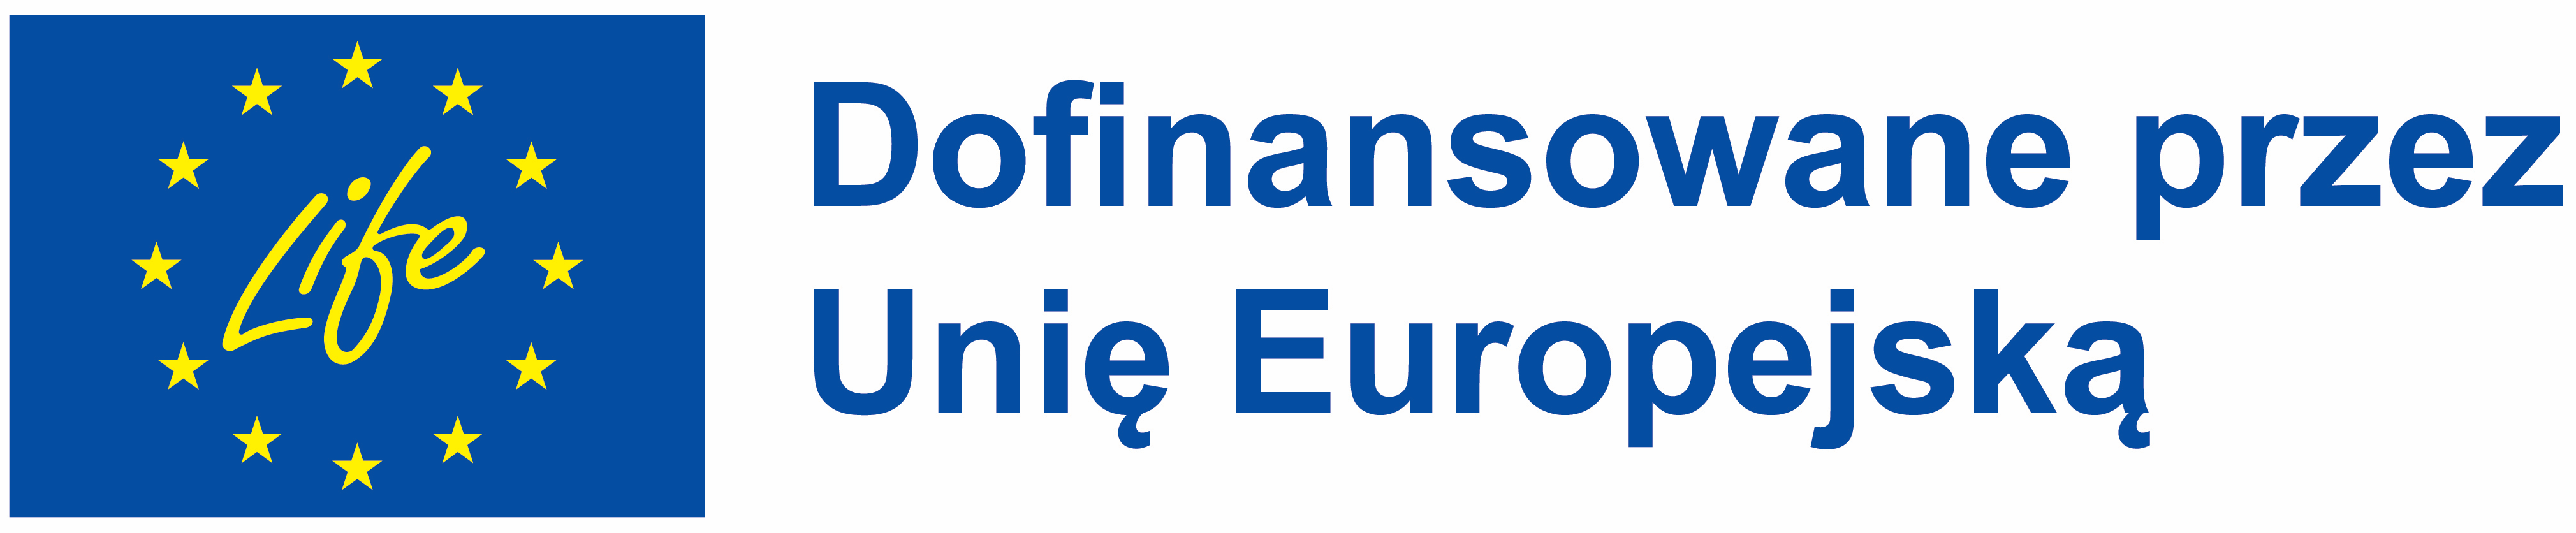 Informacja o dofinansowaniu z Unii Europejskiej składająca się z logo projektu LIFE oraz tekstu: Dofinansowane przez Unię Europejską.